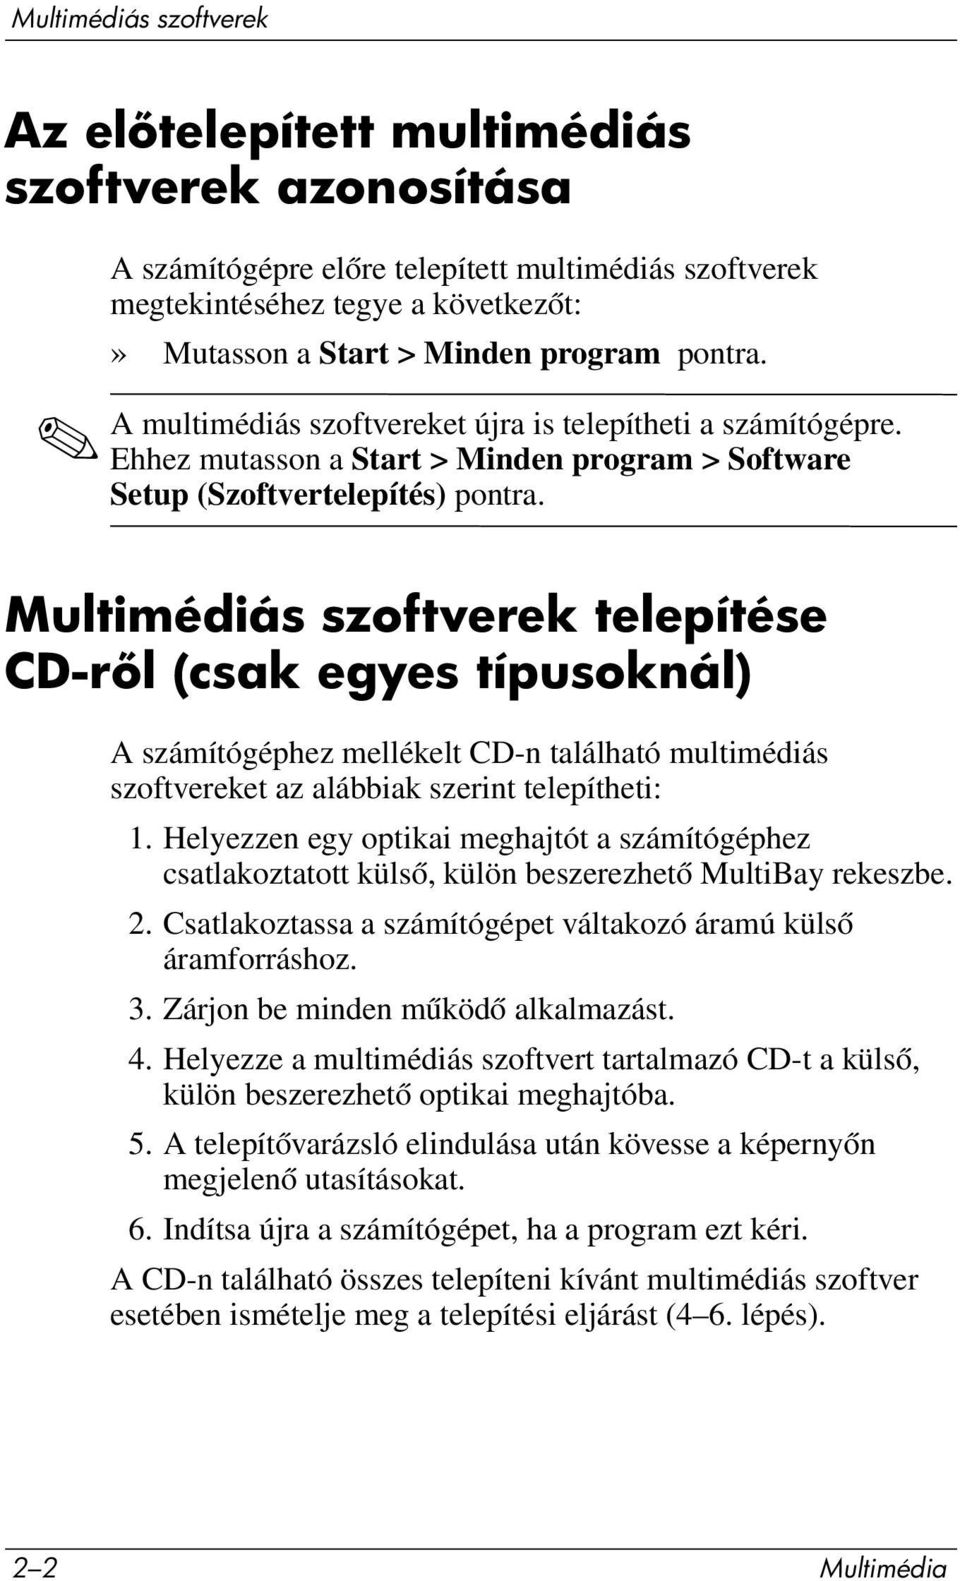 Multimédiás szoftverek telepítése CD-r l (csak egyes típusoknál) A számítógéphez mellékelt CD-n található multimédiás szoftvereket az alábbiak szerint telepítheti: 1.